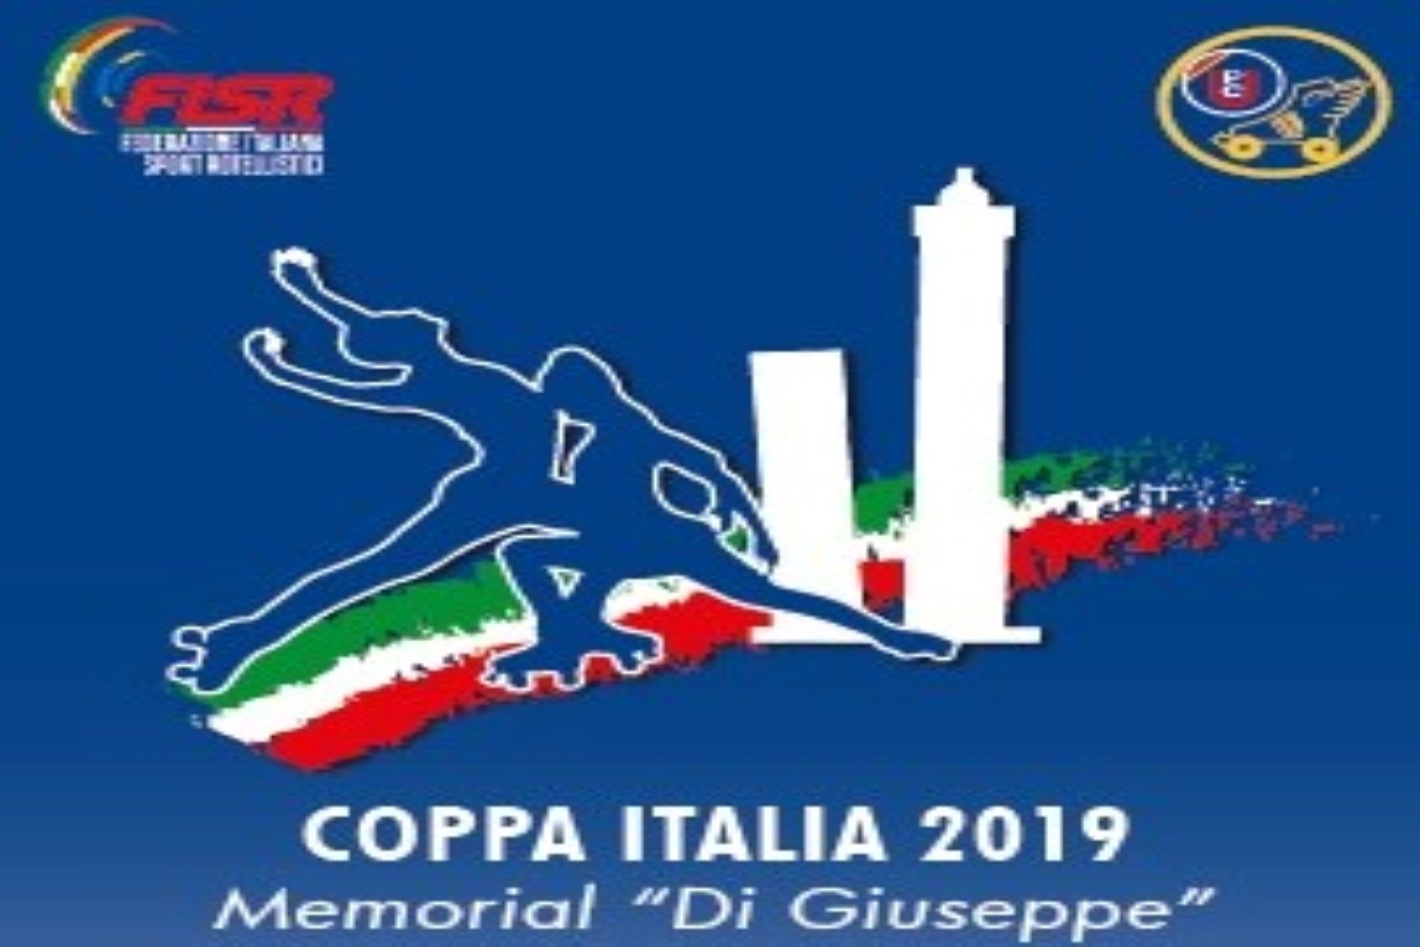 images/Cover_Coppa_Italia_2019.jpg